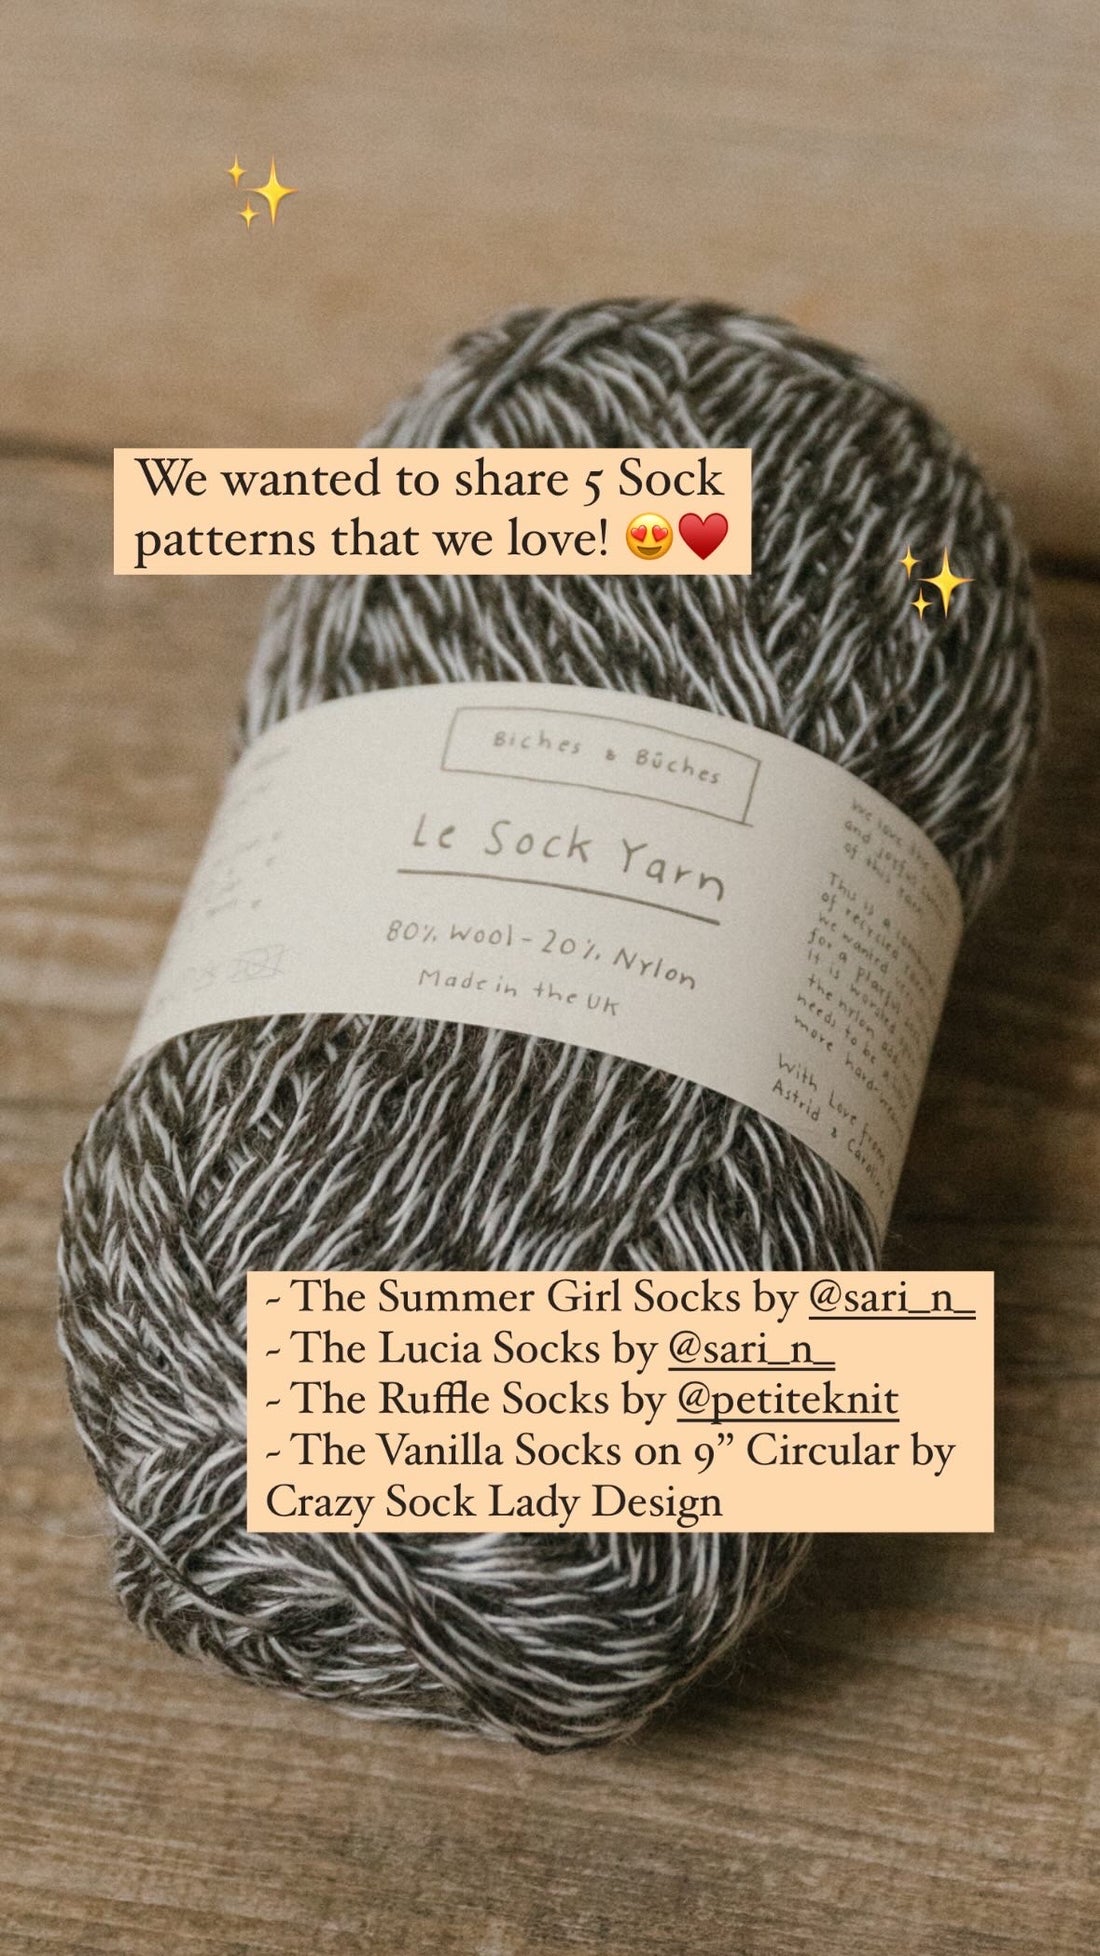 Le Sock Yarn